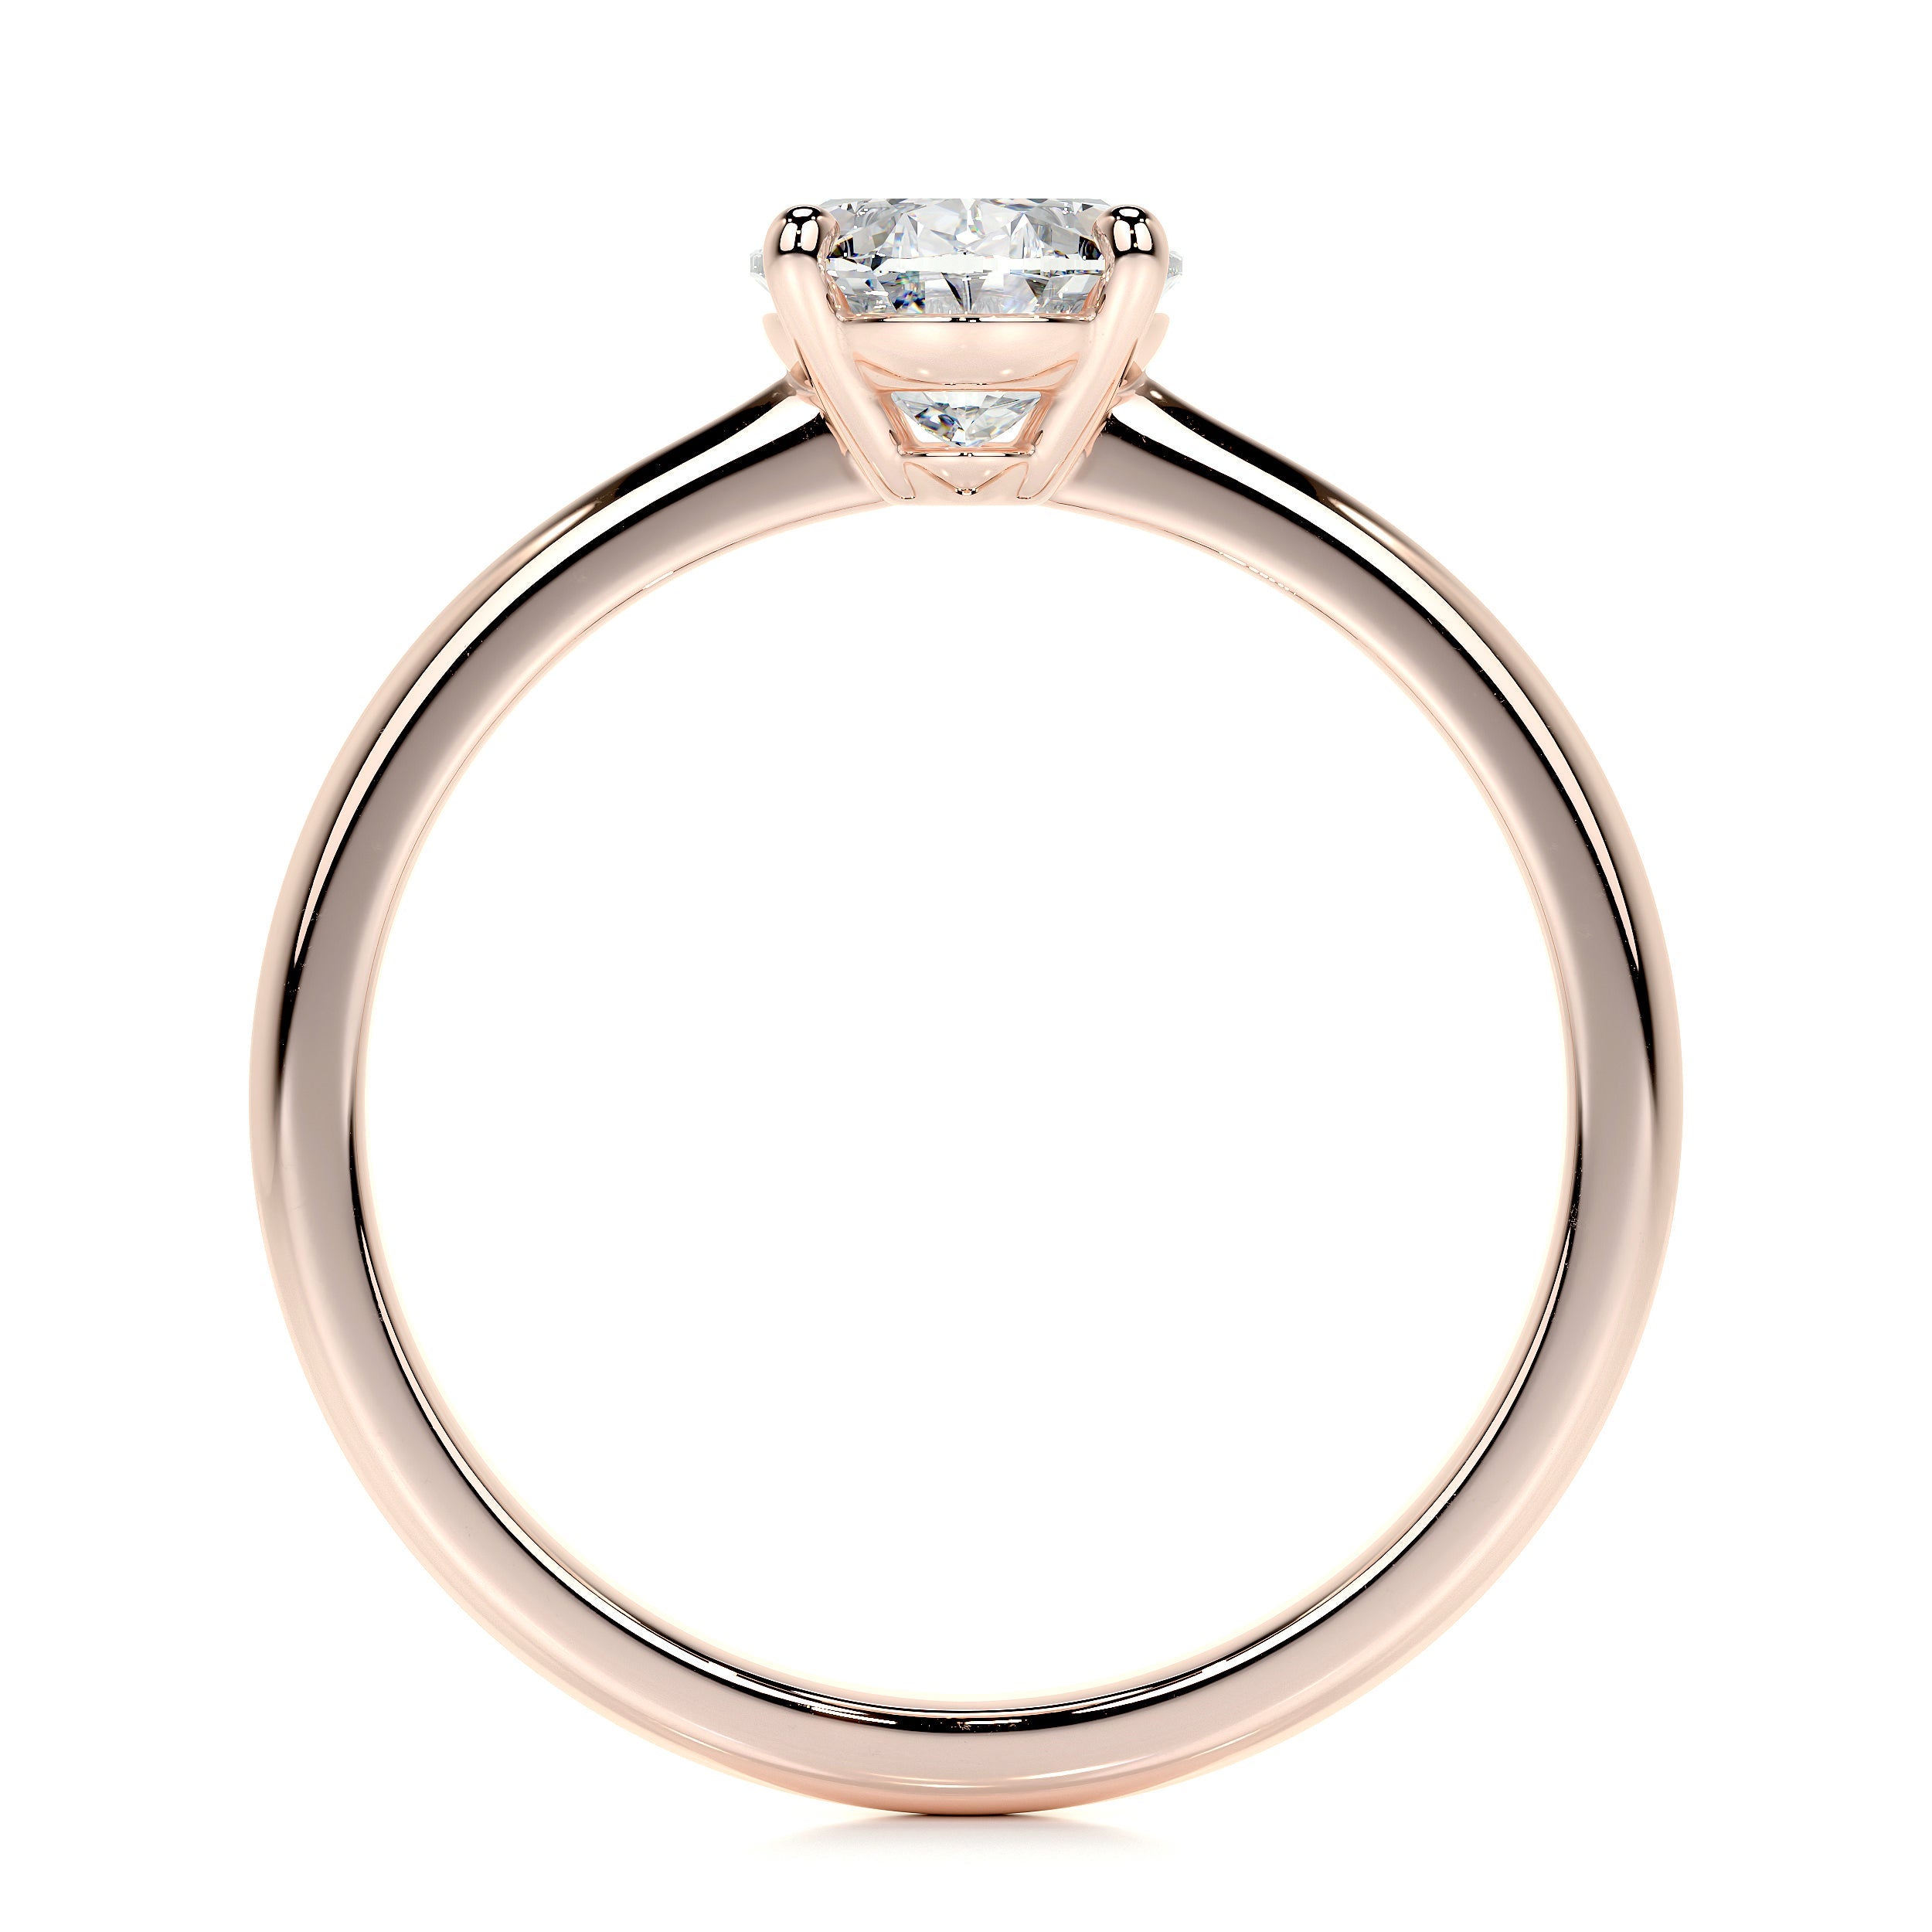 Julia Lab Grown Diamond Ring   (1 Carat) -14K Rose Gold